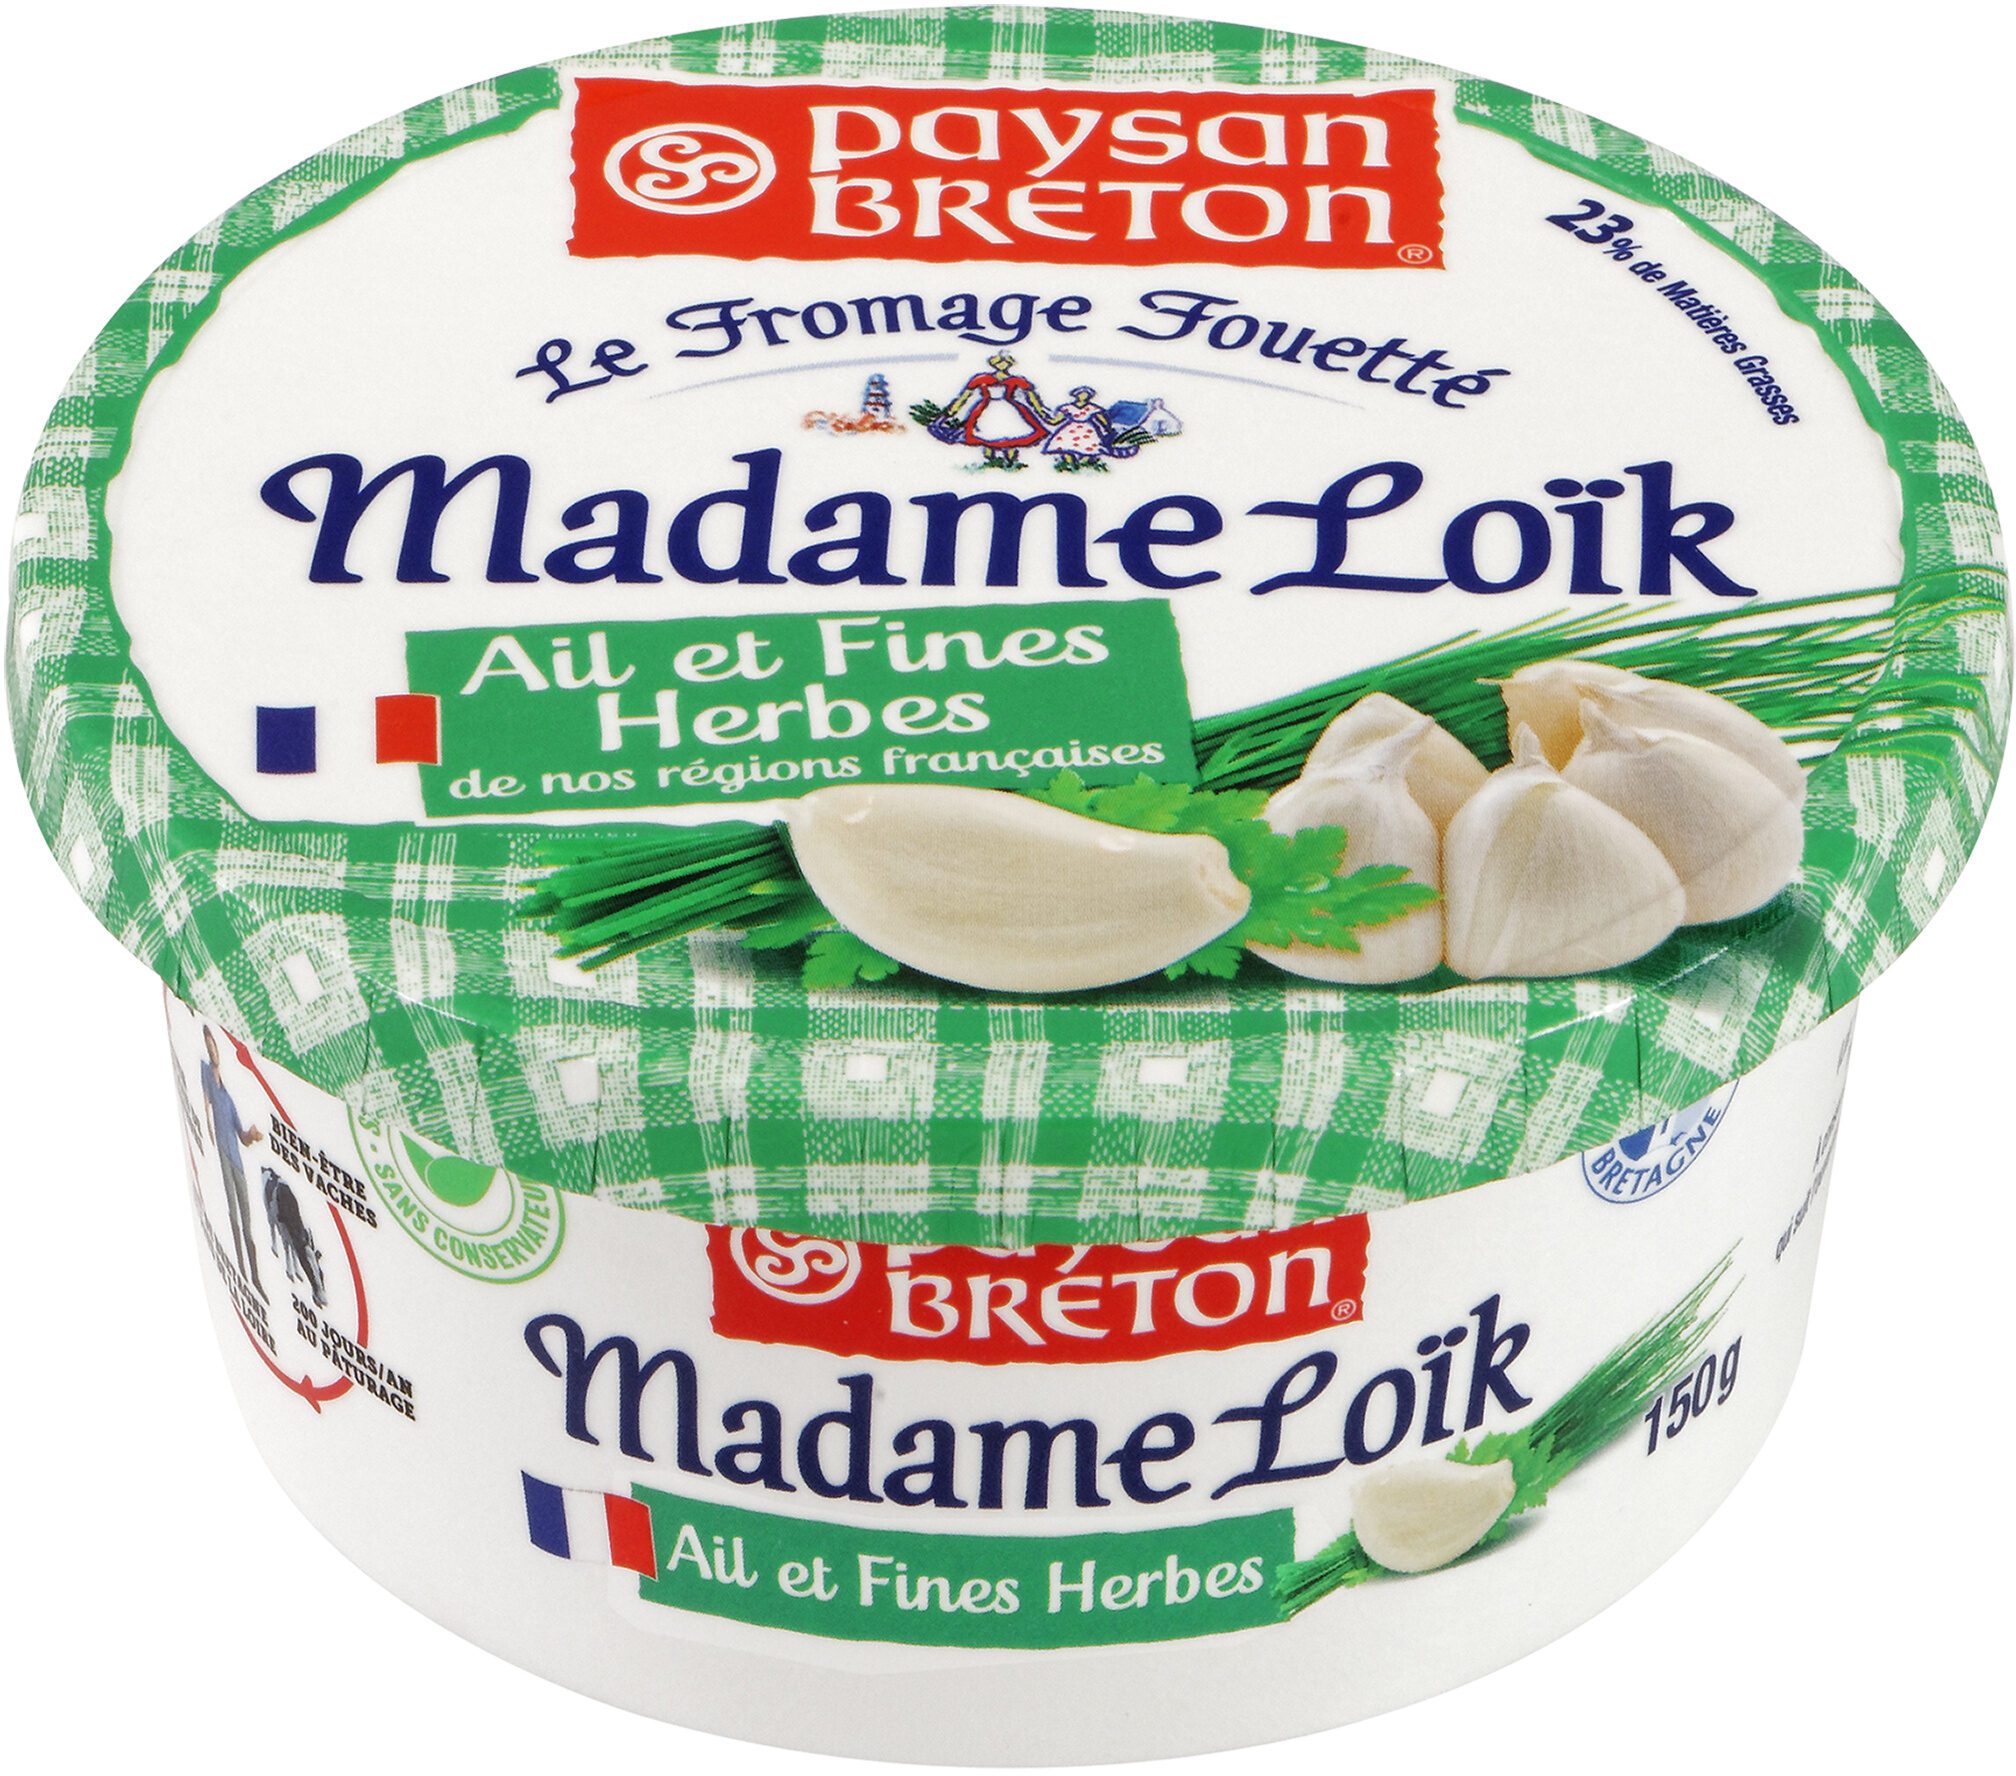 Paysan Breton - Le Fromage Fouetté Madame Loïk - Ail et fines herbes de nos régions françaises - Produit